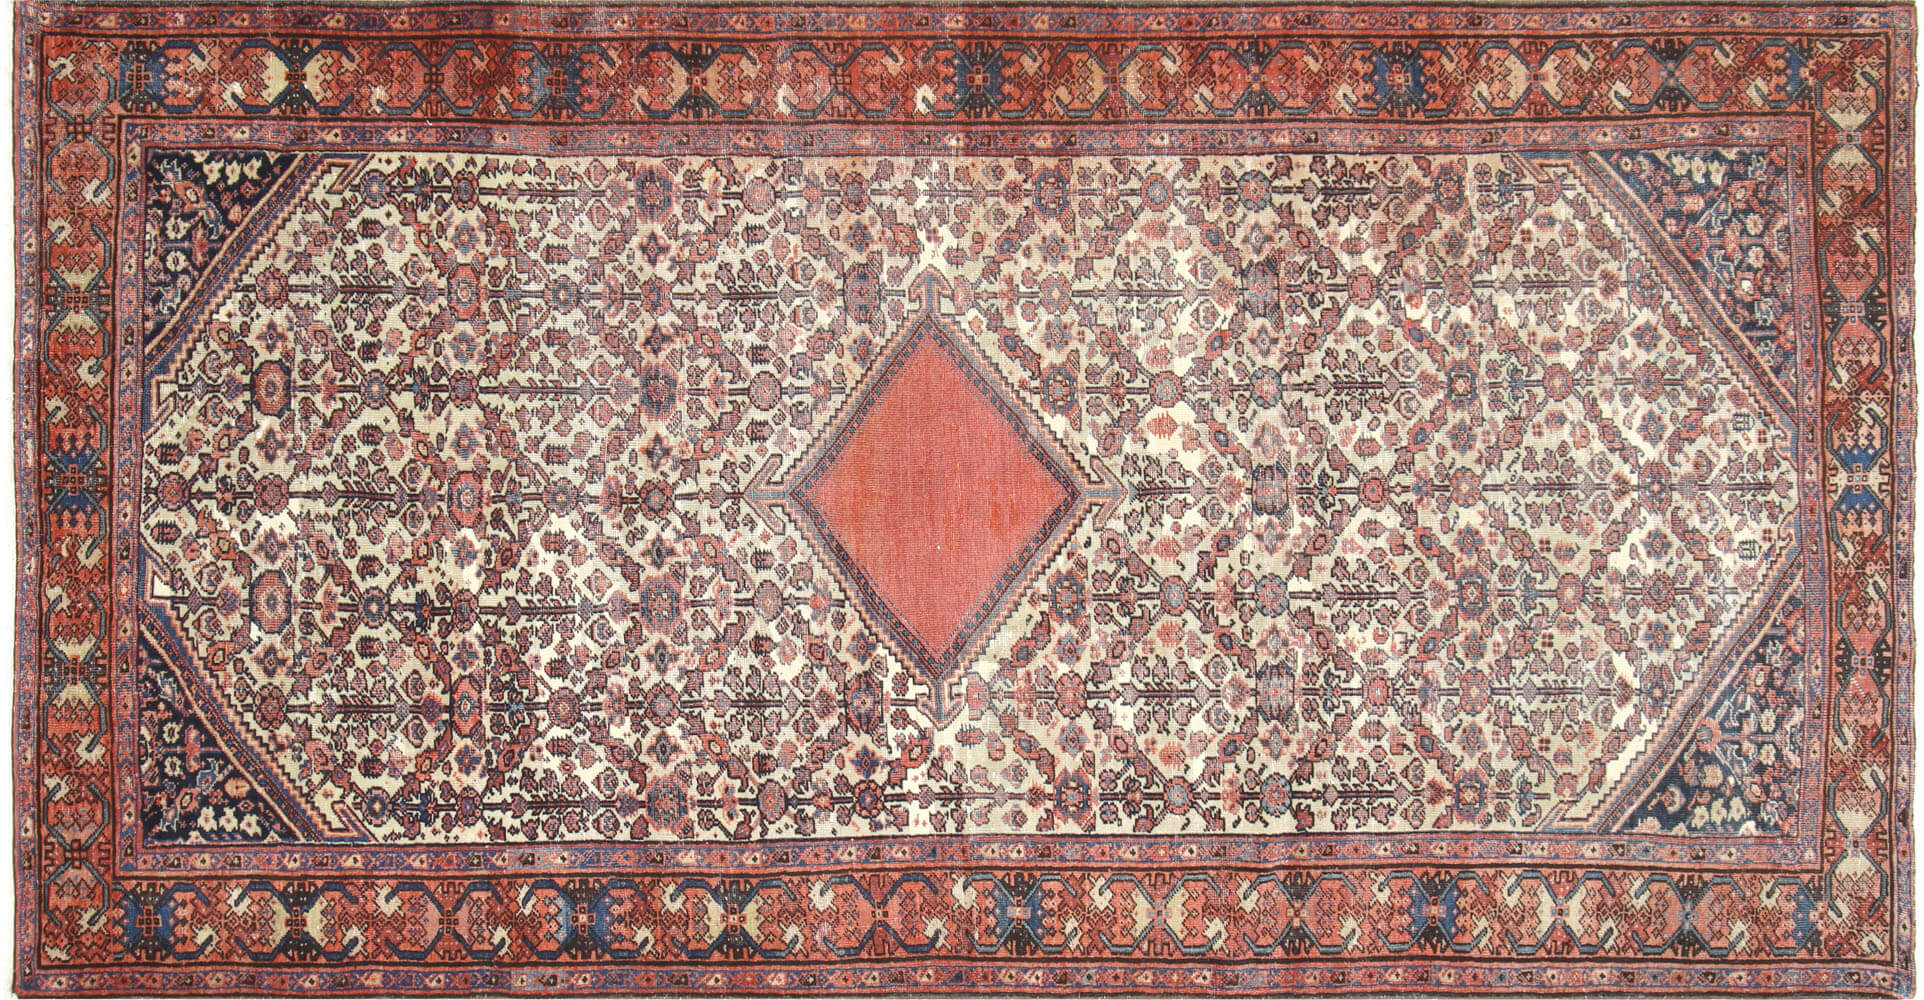 Semi Antique Persian Mahal Rug - 5' x 9'11"